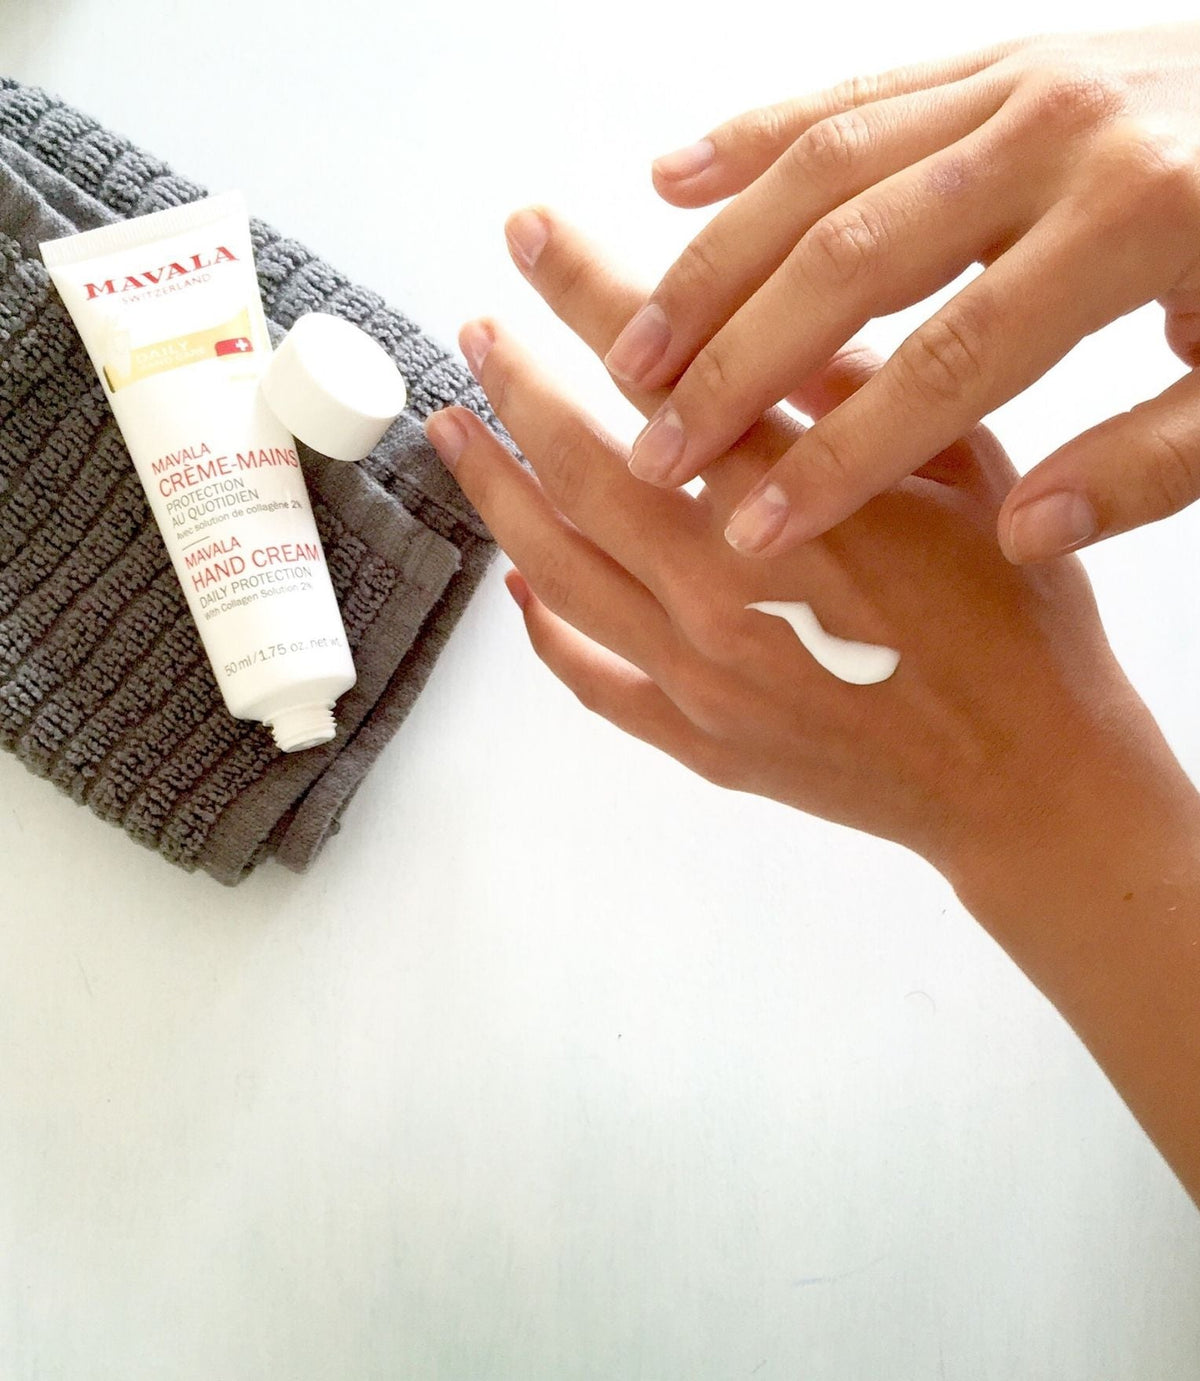 Hand Cream with Collagen Solution 2% 50ml